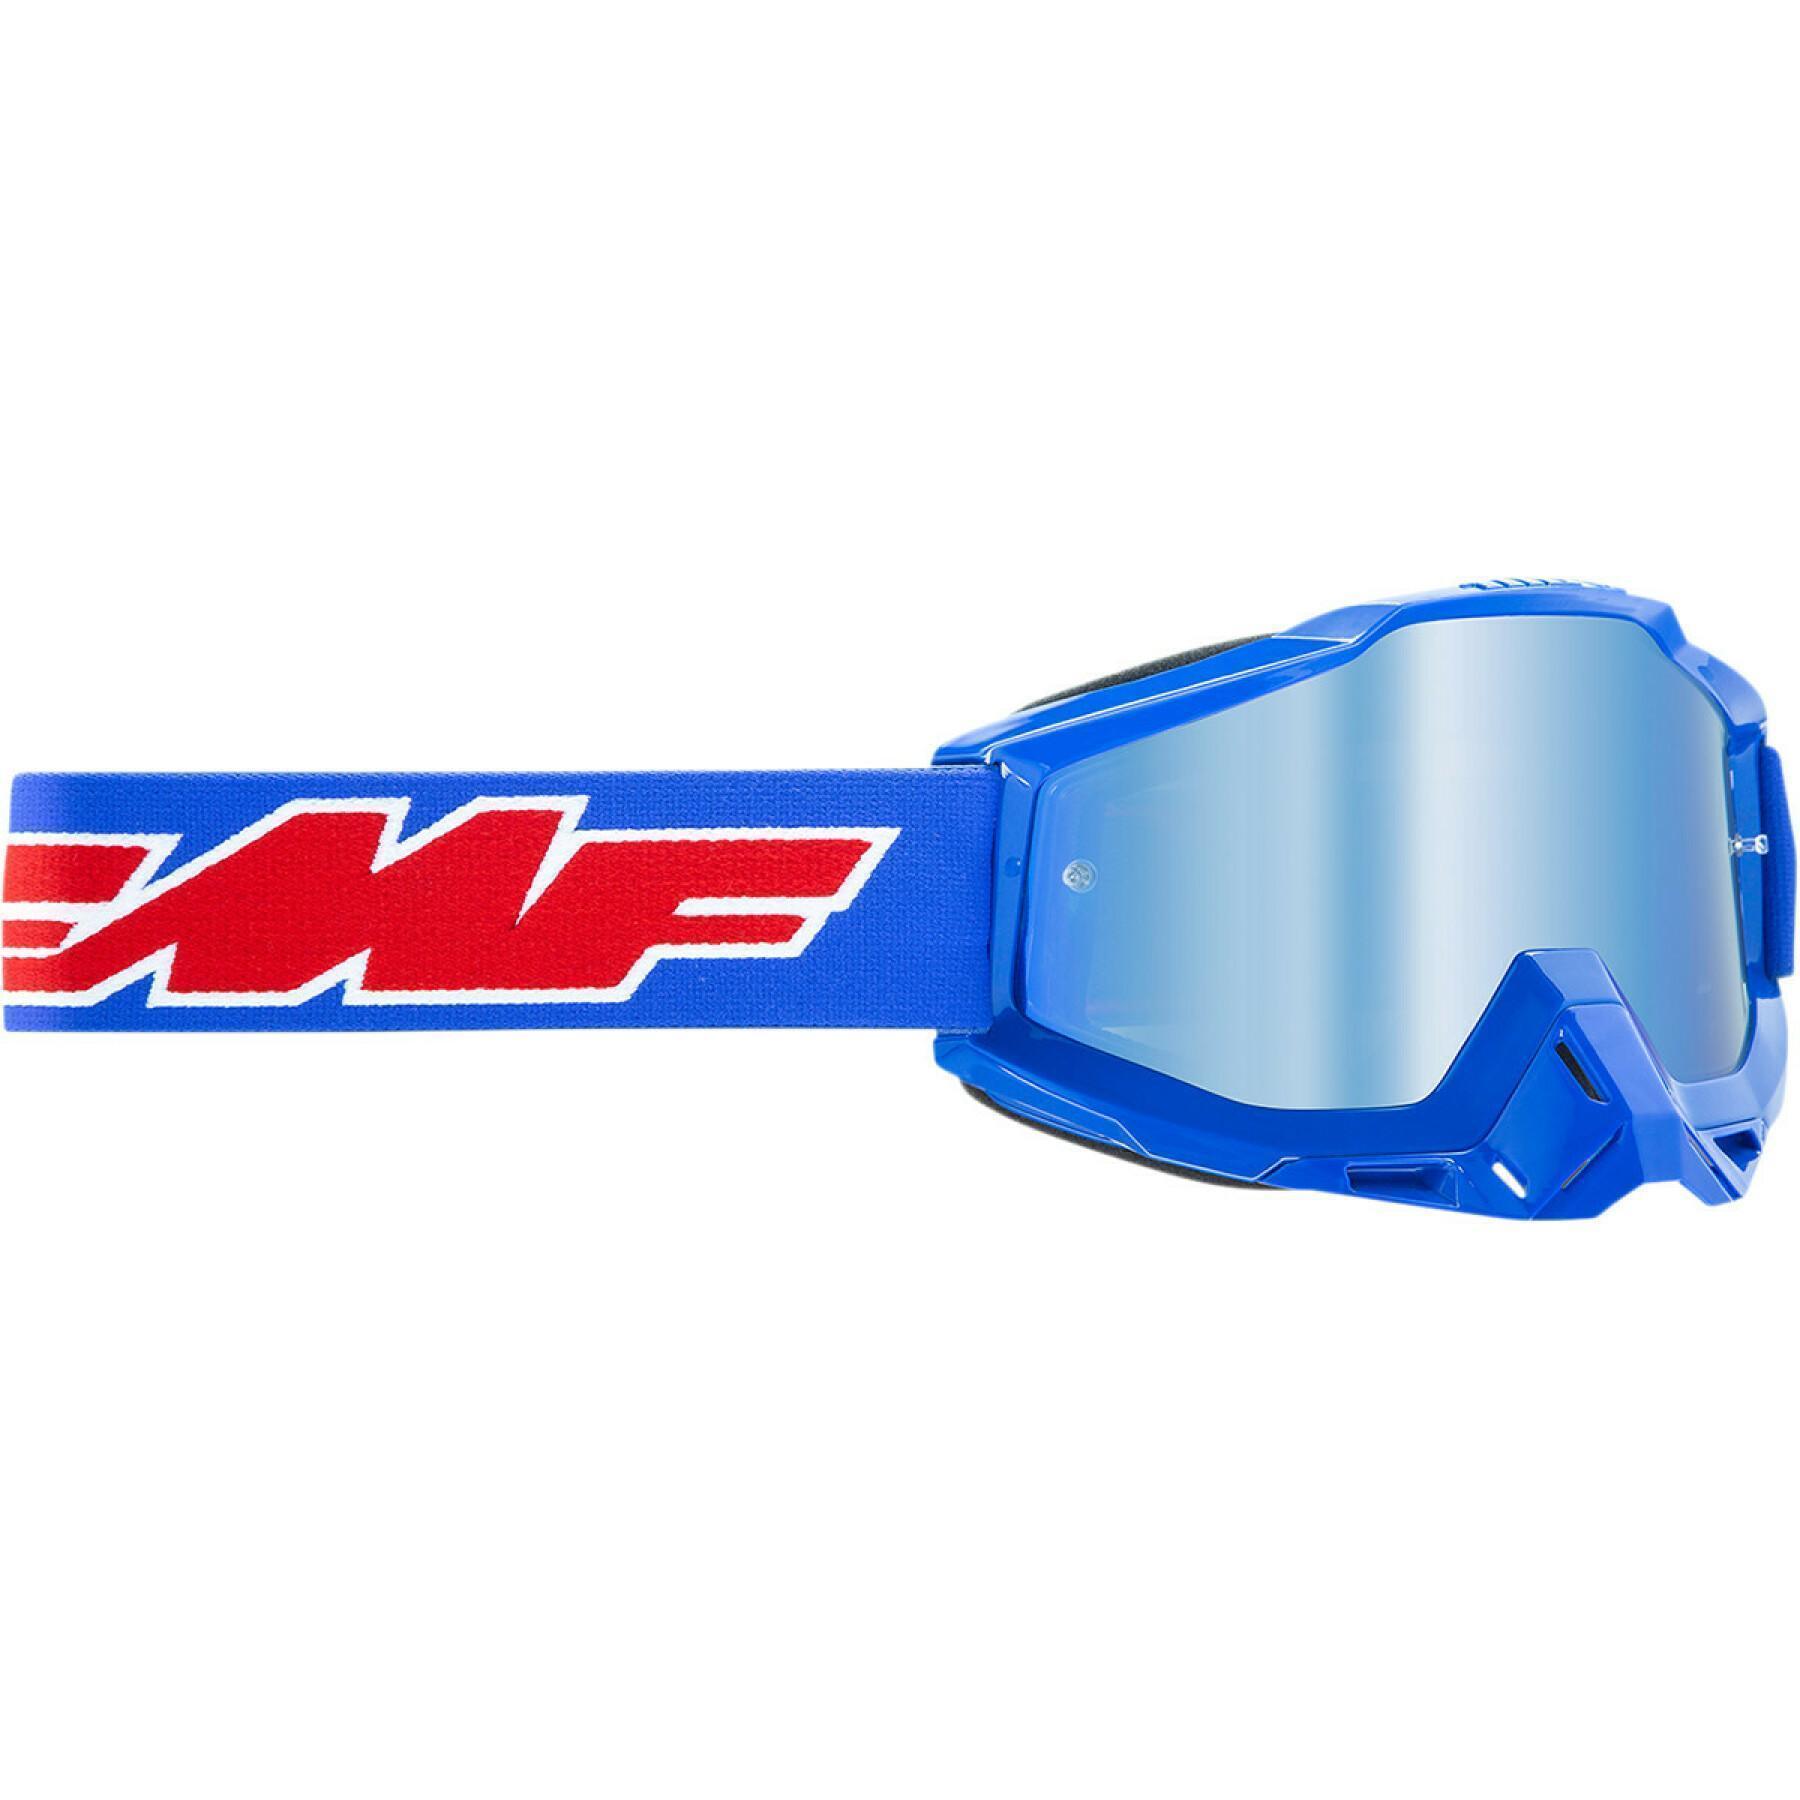 Gafas de moto para niños FMF Vision rocket